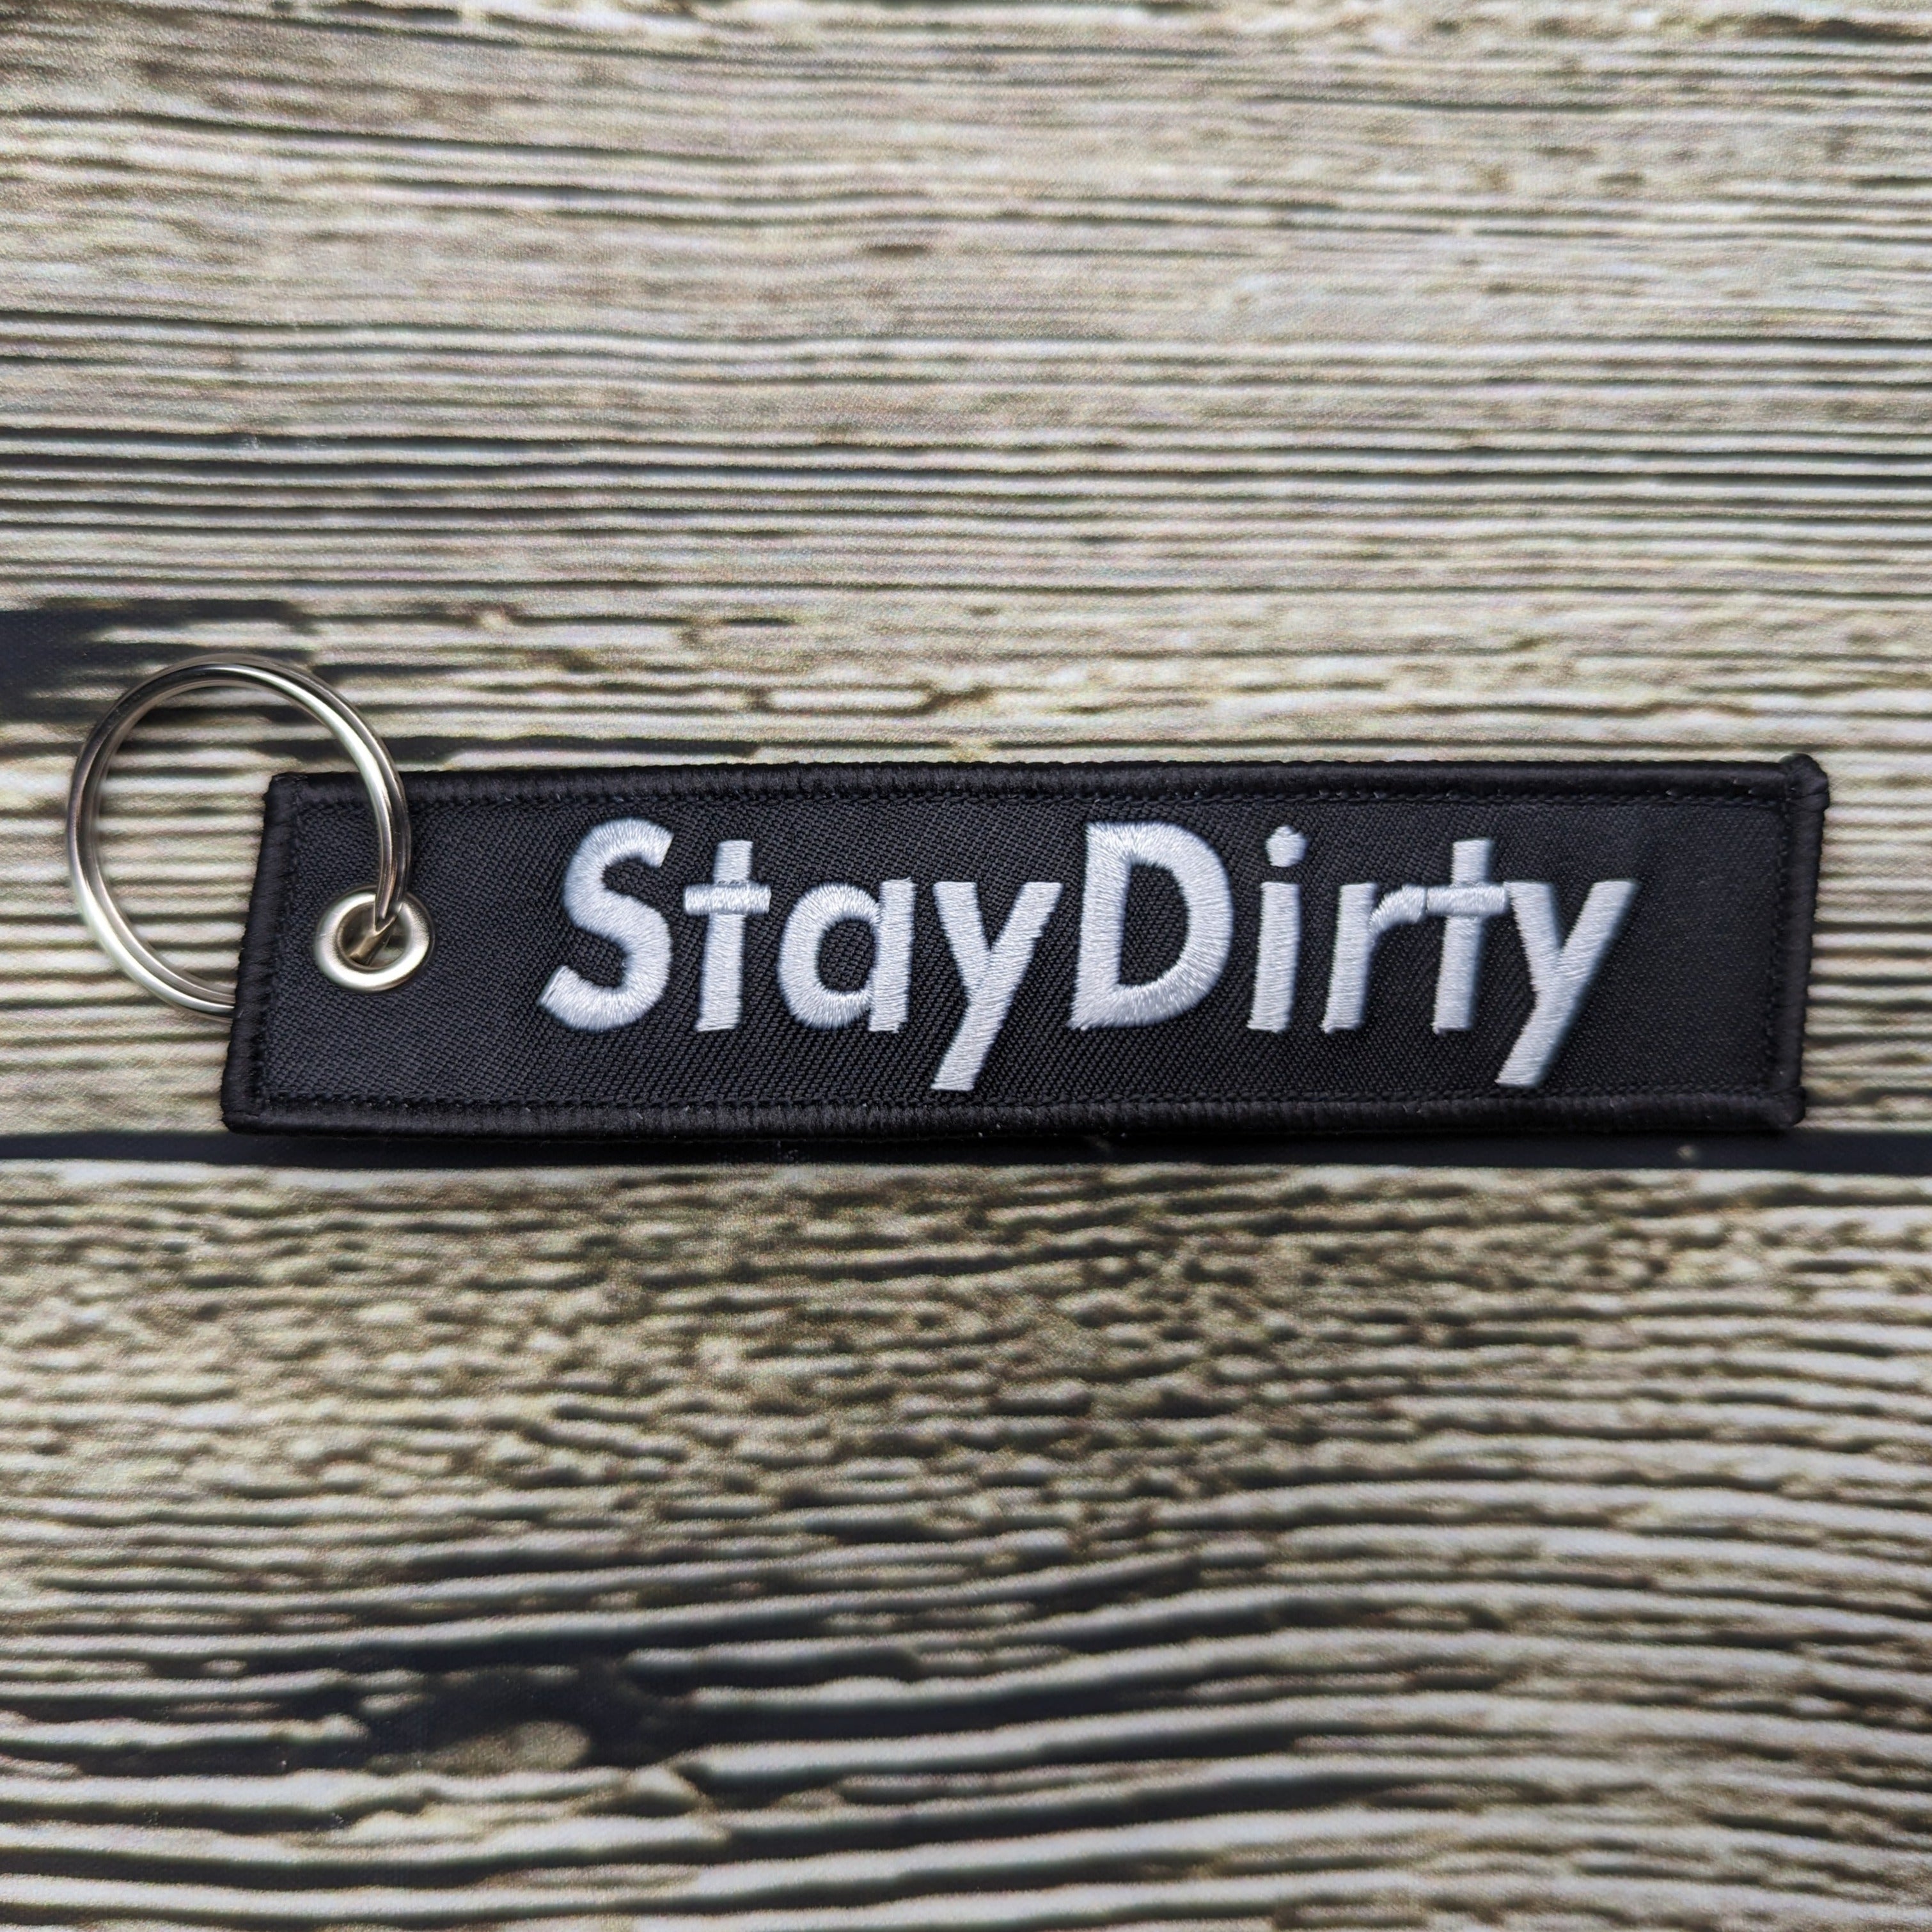 Stay Dirty Key Tag - G Life UTV